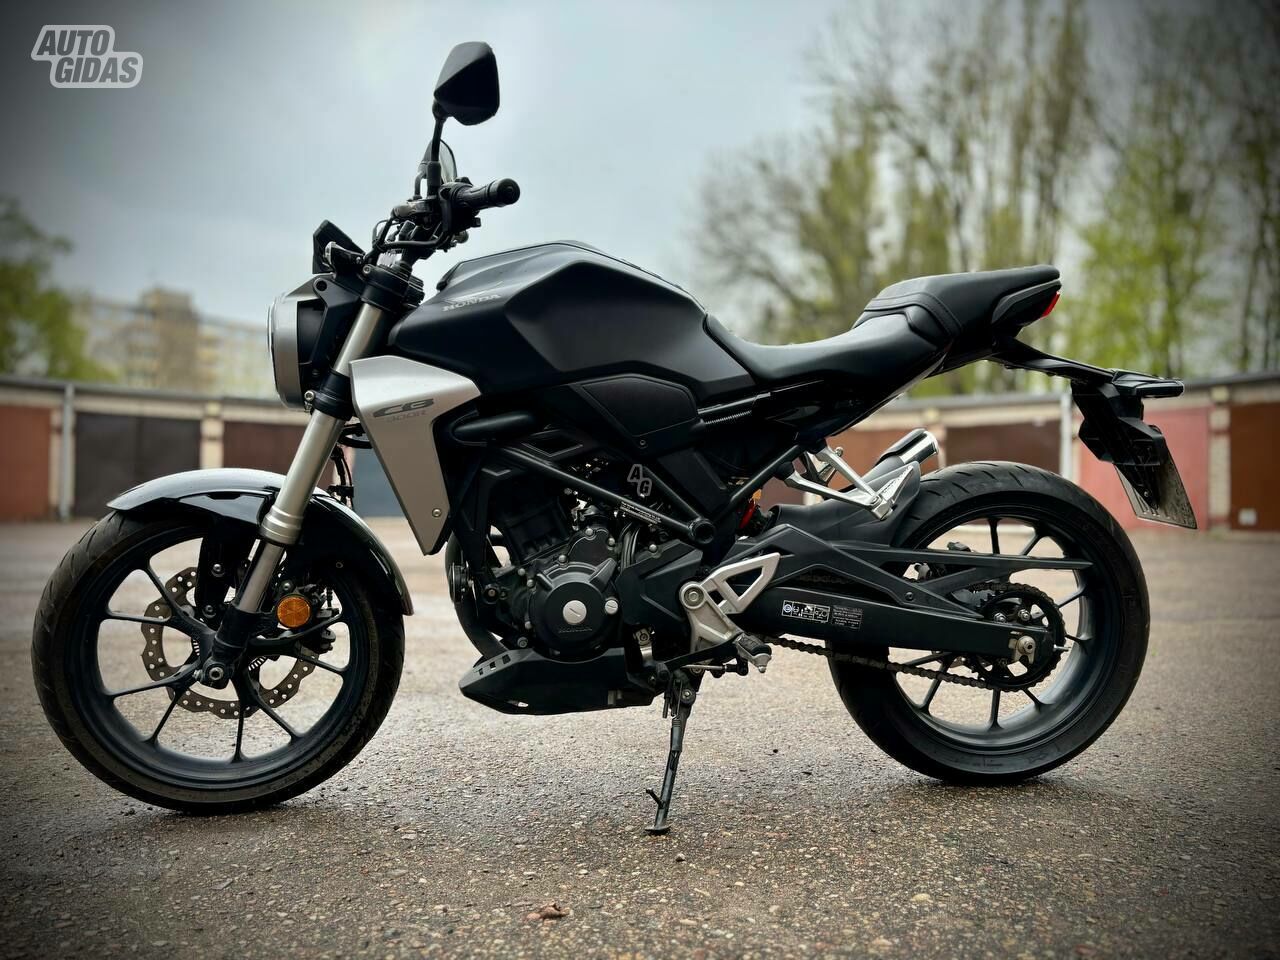 Honda CB300R 2019 y Classical / Streetbike motorcycle